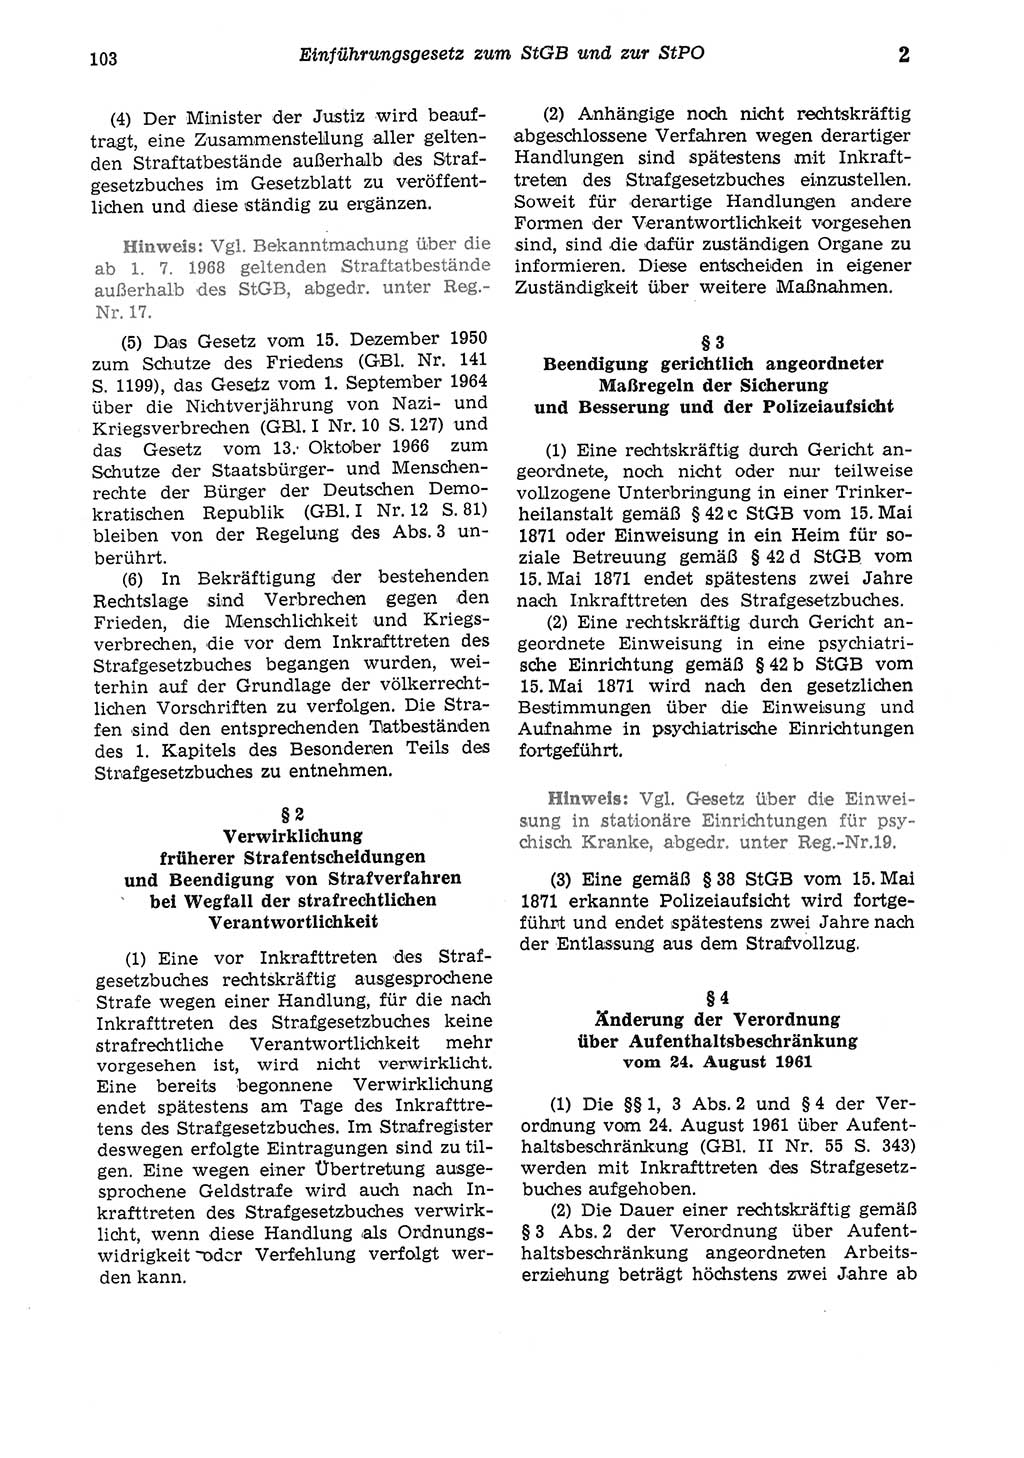 Strafgesetzbuch (StGB) der Deutschen Demokratischen Republik (DDR) und angrenzende Gesetze und Bestimmungen 1975, Seite 103 (StGB DDR Ges. Best. 1975, S. 103)